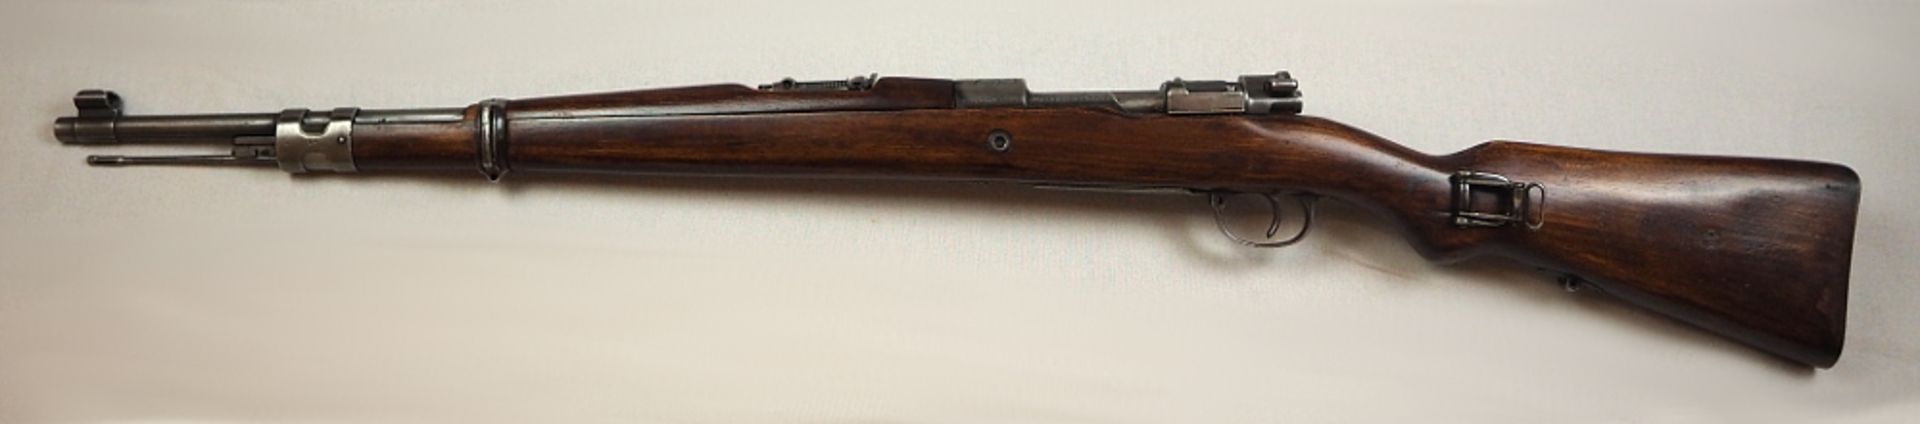 1 Repetiergewehr MAUSERauf Schaft bez. "Chile Orden Y Patria Modelo 1935" Holzschaft L ca. 106cm